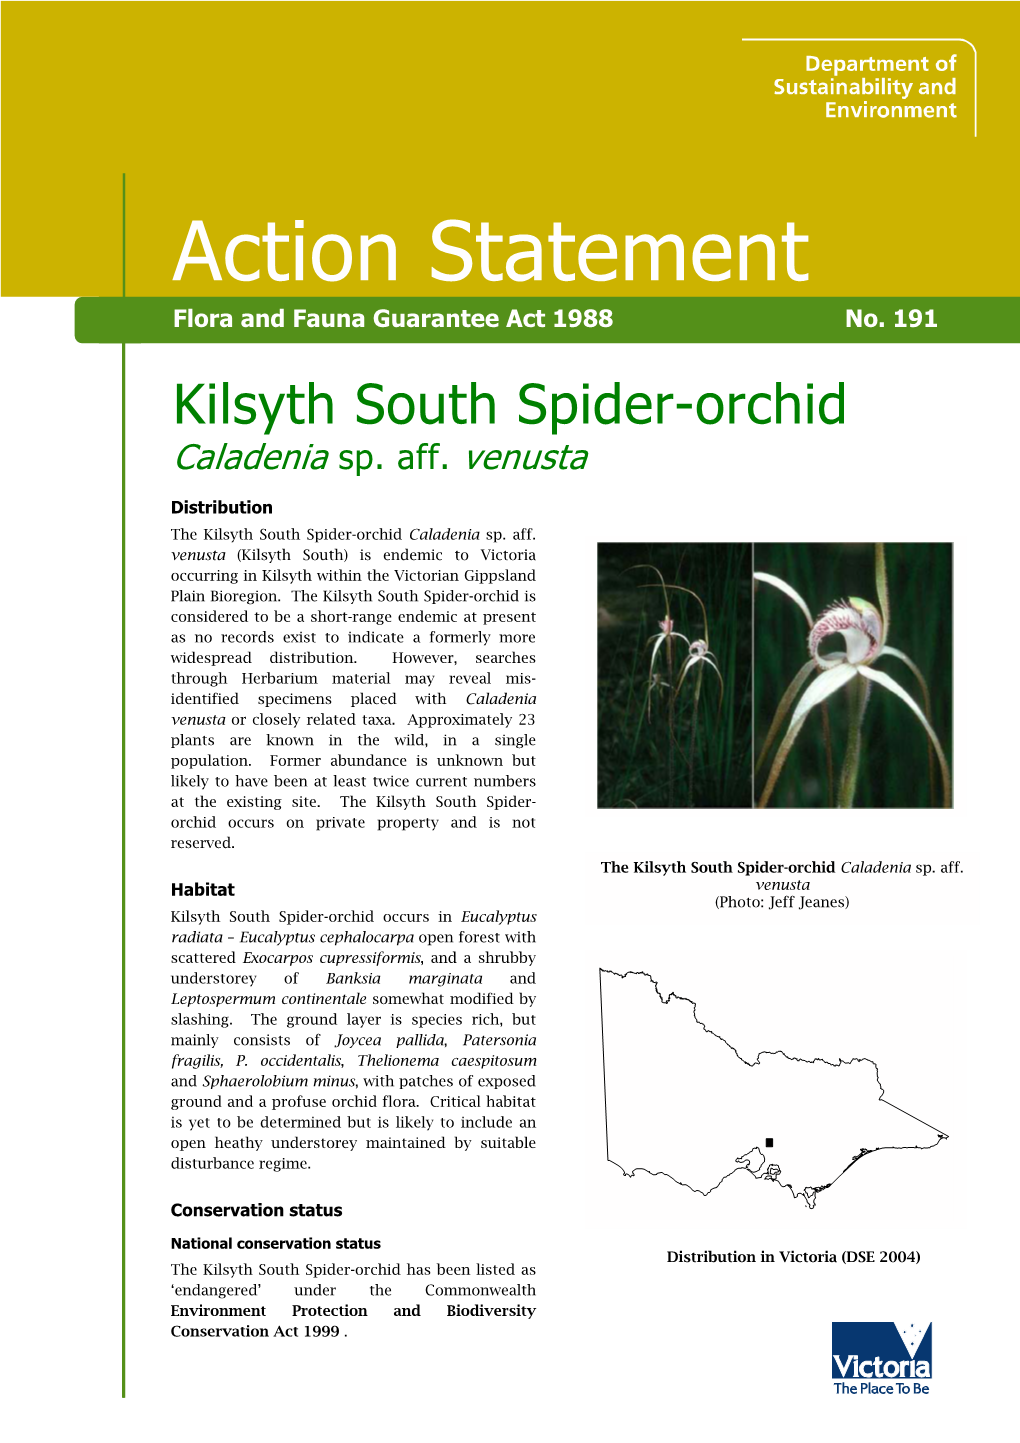 Kilsyth South Spider-Orchid Caladenia Sp